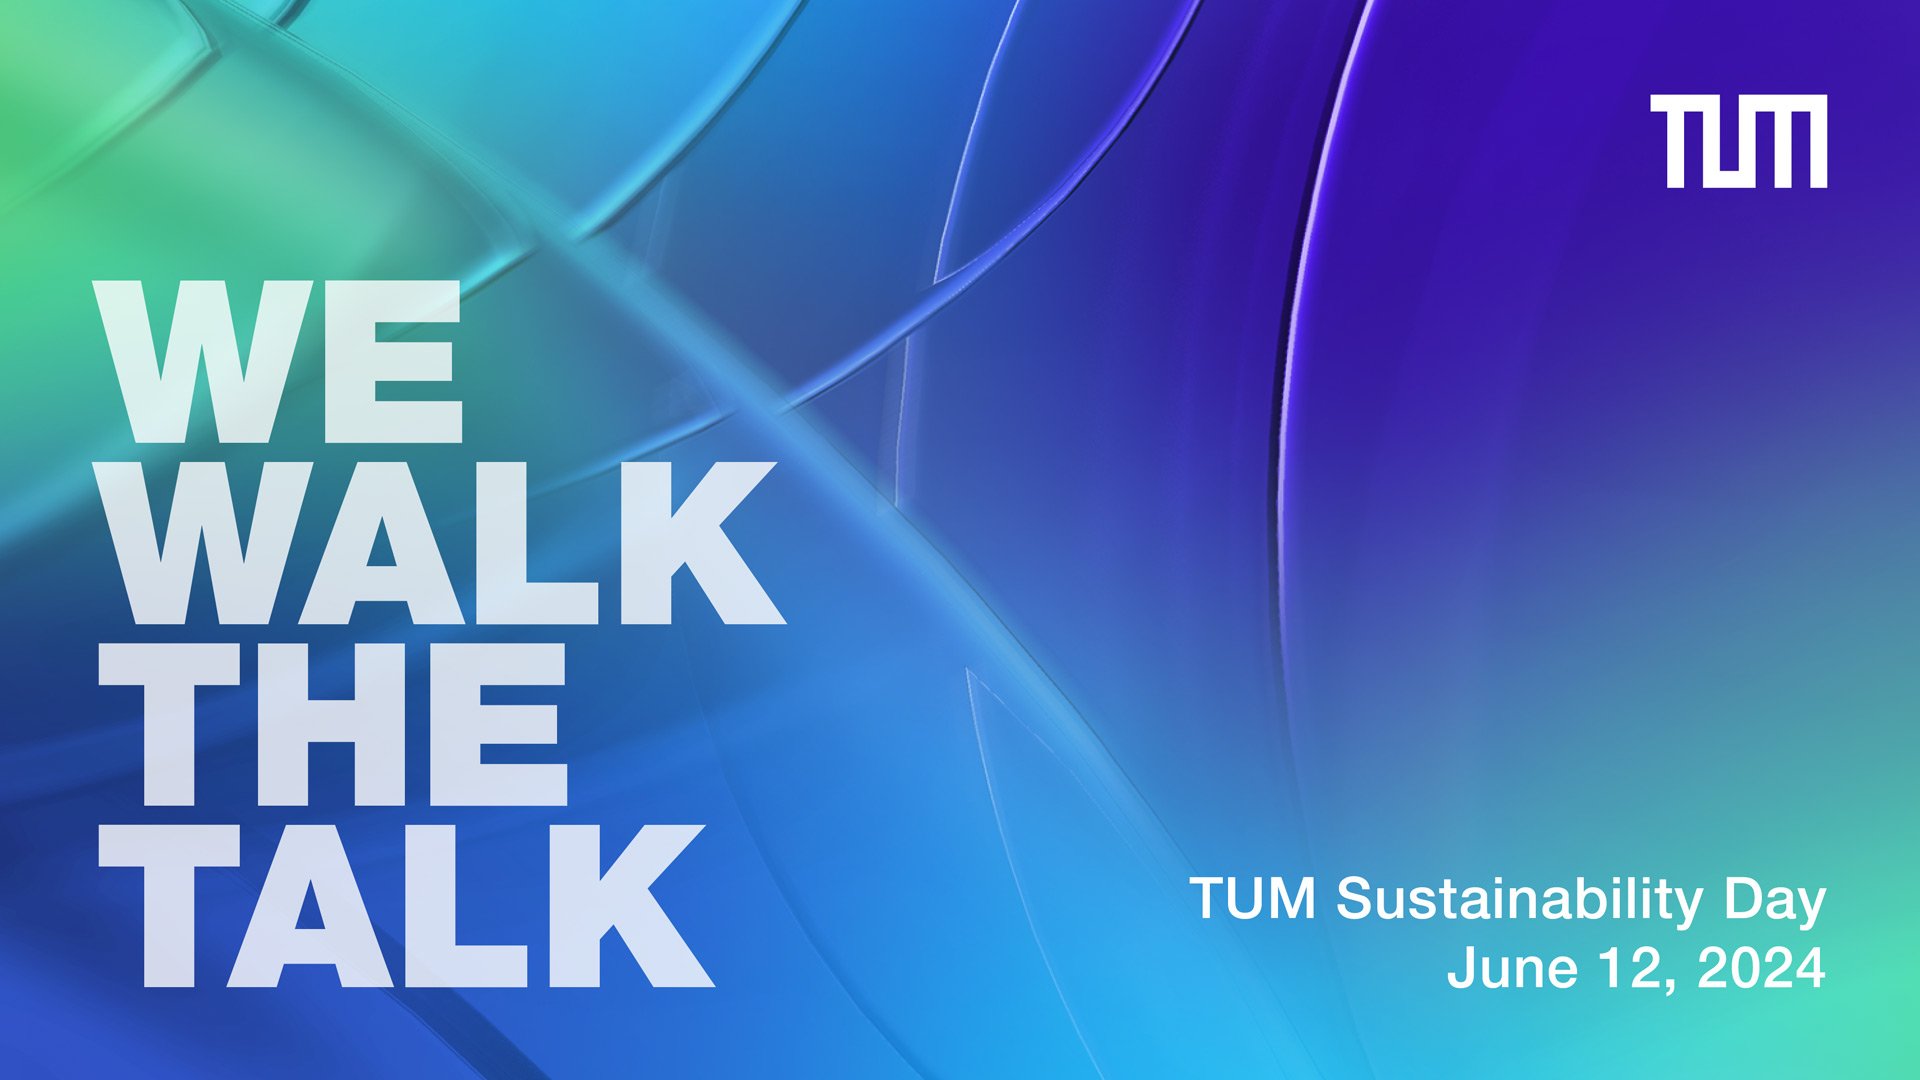 Schriftzug "We walk the talk" und Informationen zum Sustainability Day 2024 auf einem blaugrünen Hintergrund.